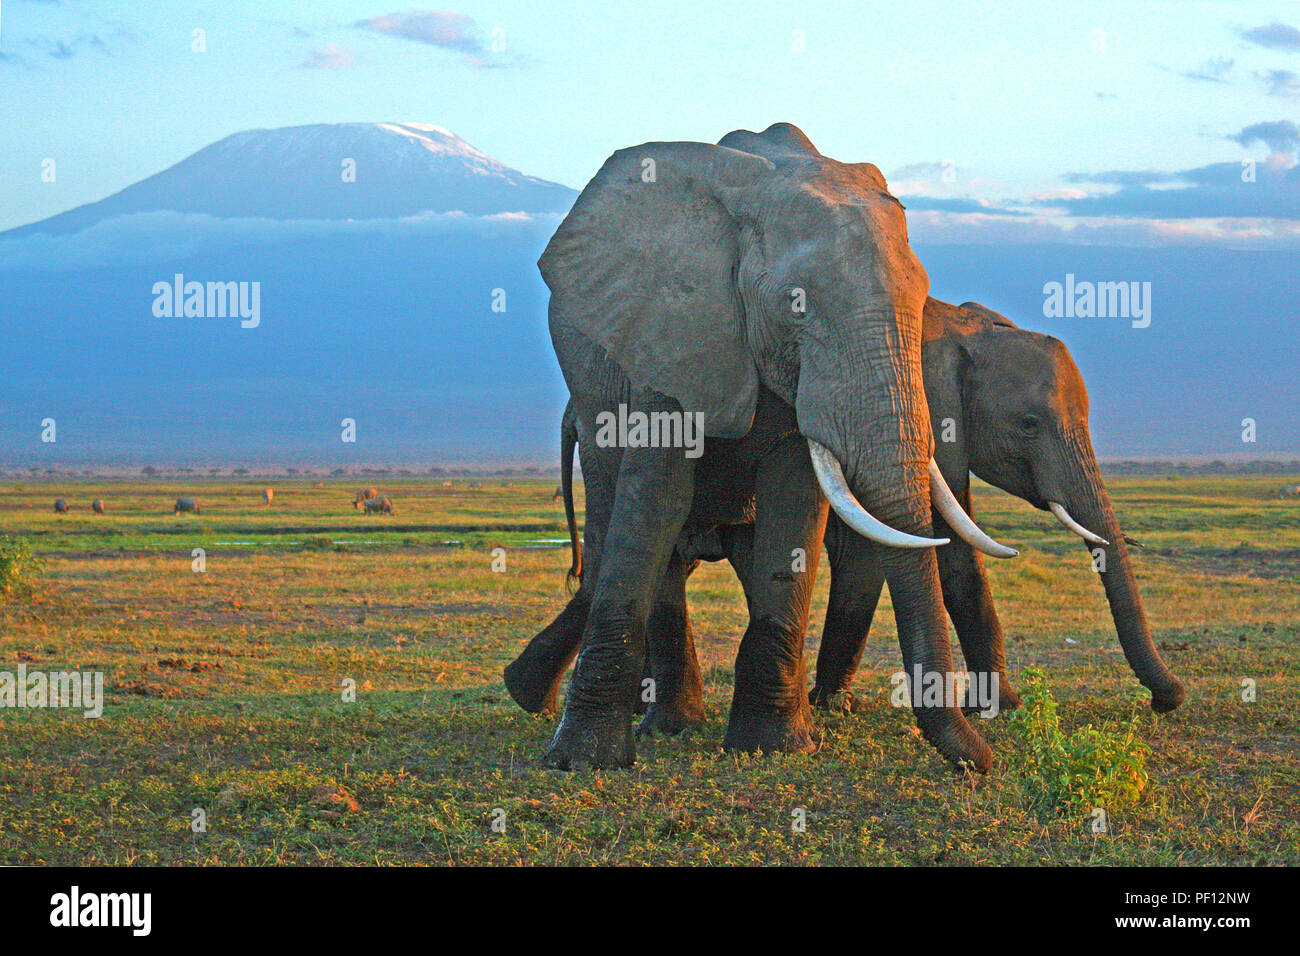 African bush elephant or African elephant (Loxodonta africana) at Mount Kilimanjaro, Amboseli Nationalpark, Kenya Stock Photo